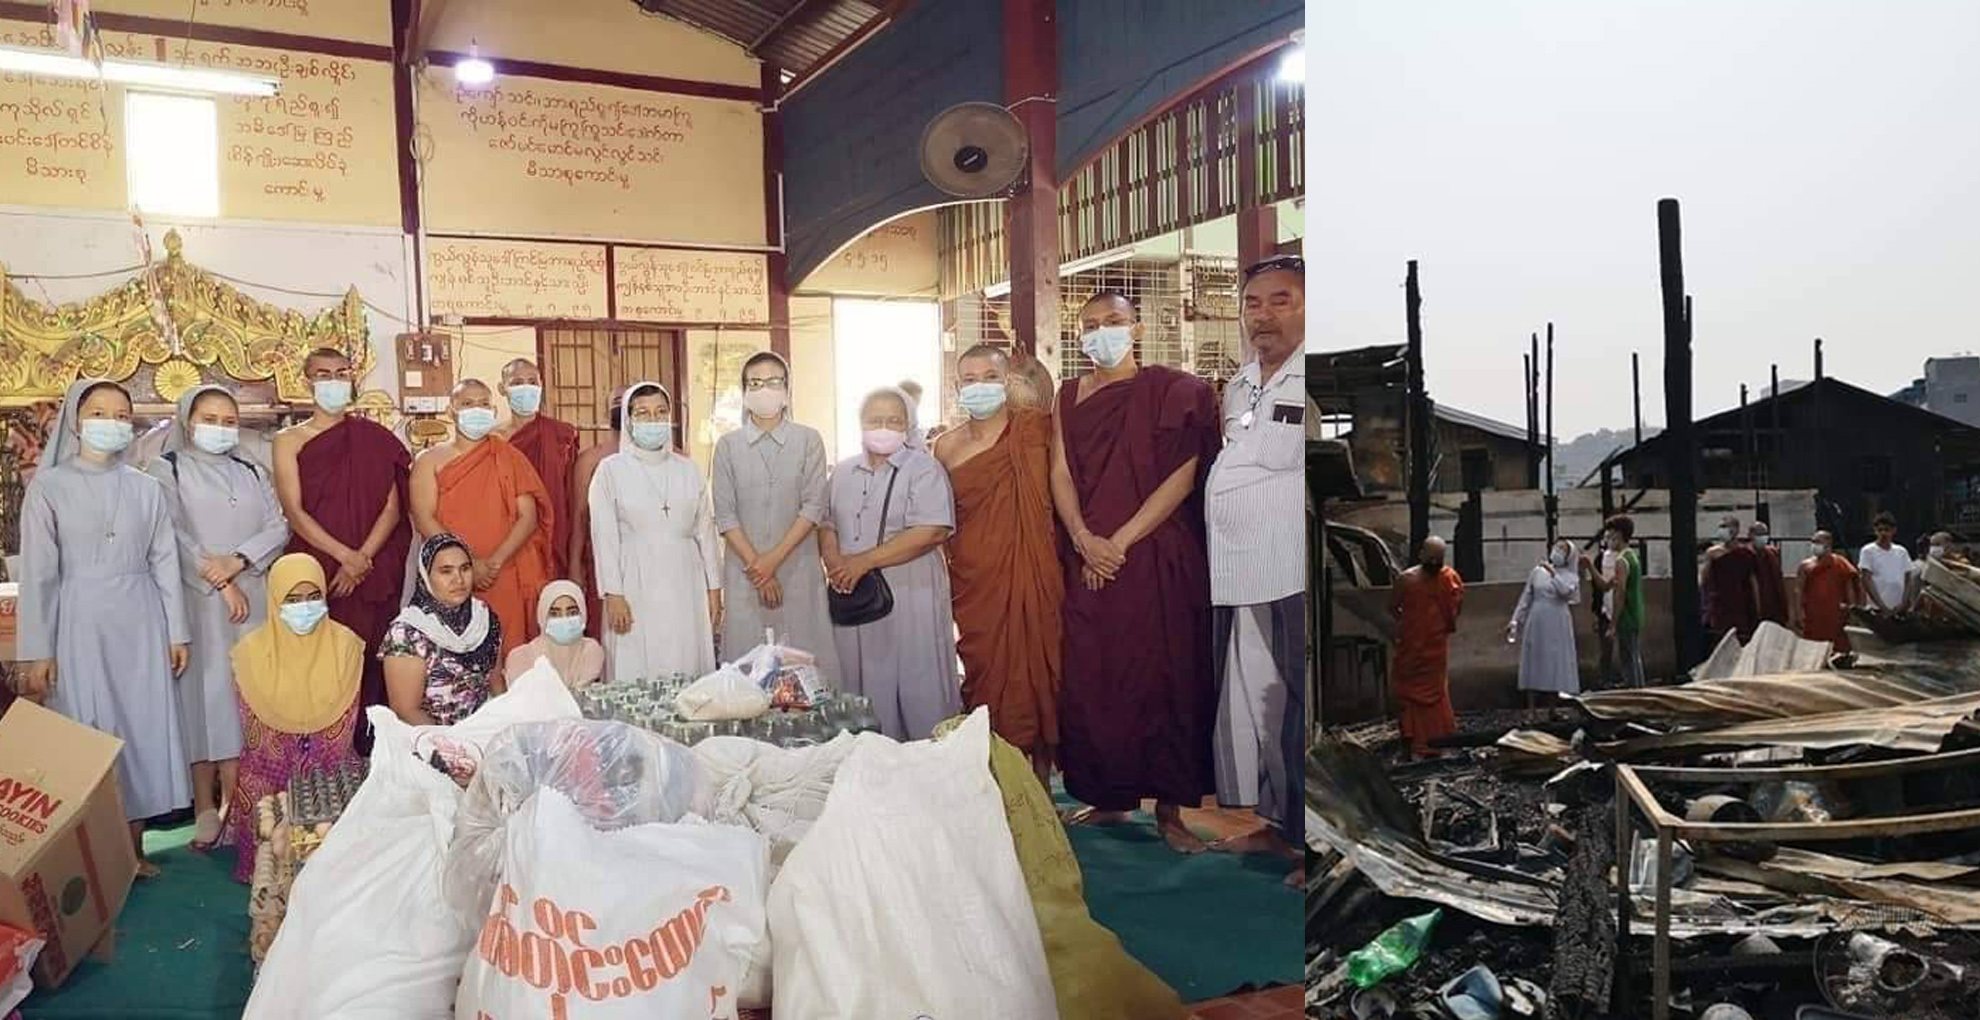 พระภิกษุสงฆ์พม่า-แม่ชีศาสนาคริสต์ “ร่วมช่วยเหลือชุมชนมุสลิม” หลังบ้านถูกเผากว่า 40 หลังคาเรือน